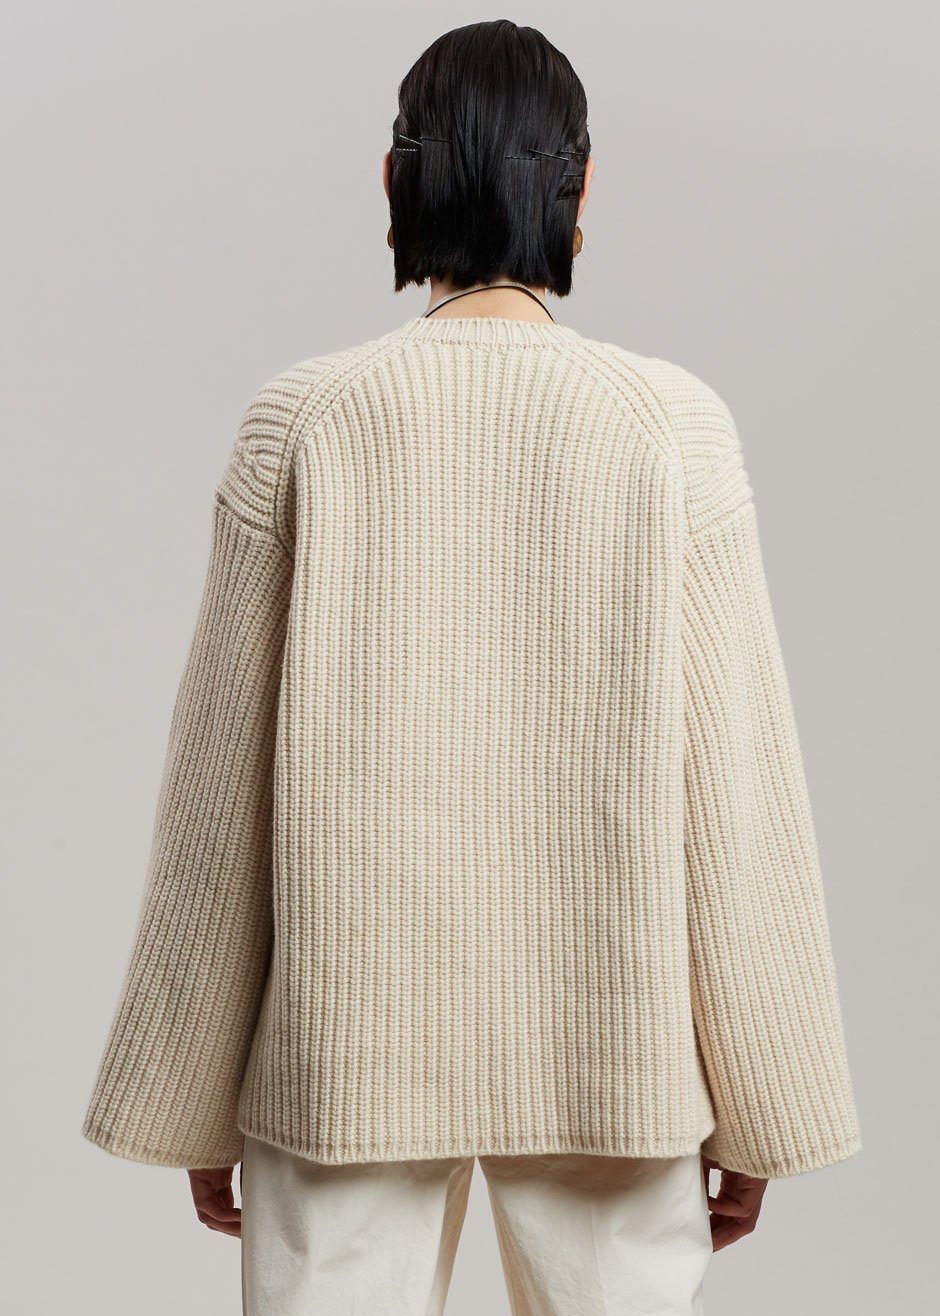 Nanushka Maura Sweater - Beige - 7